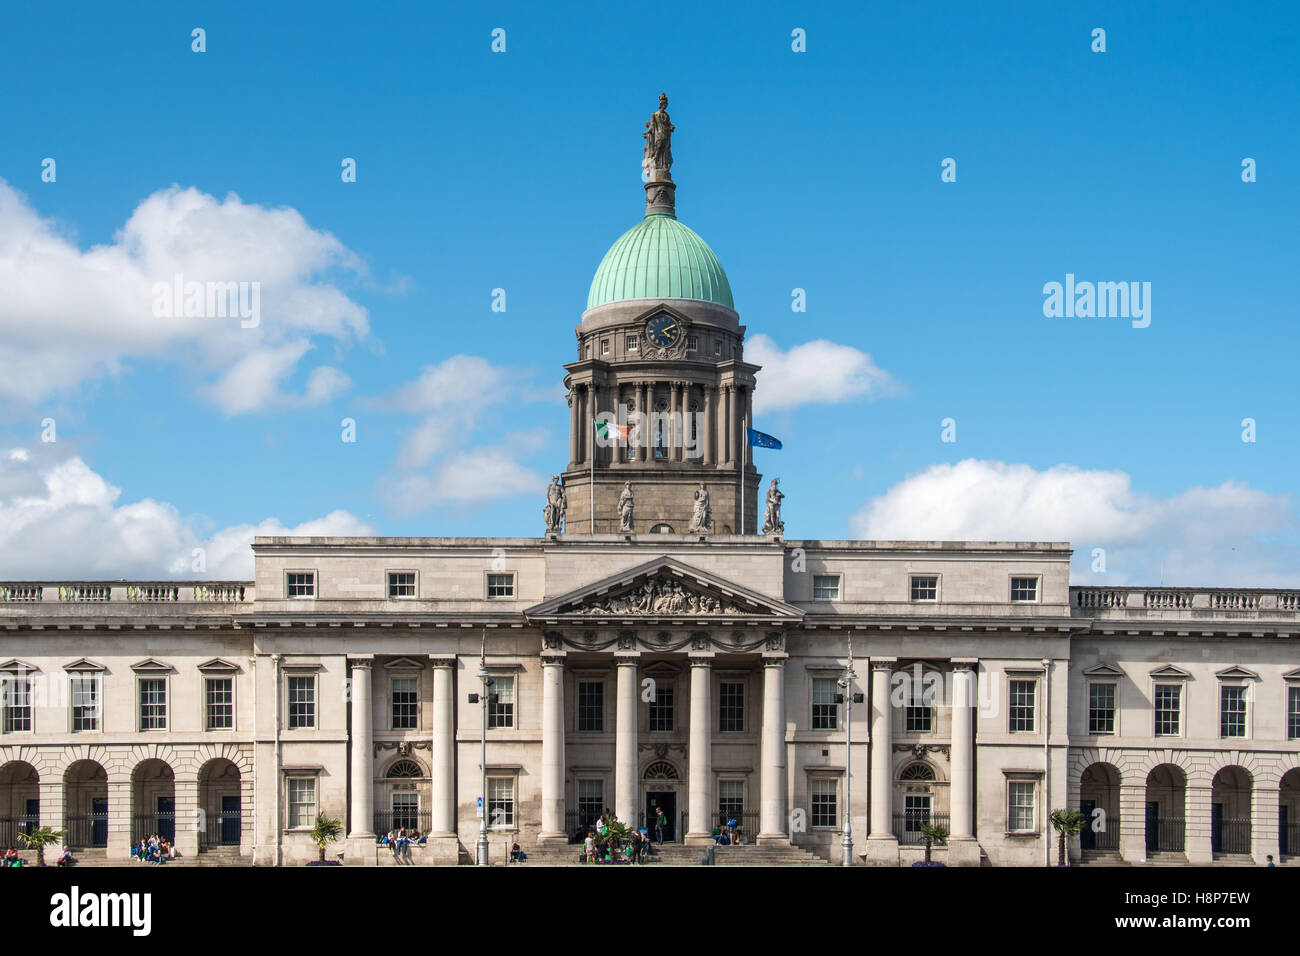 Dublin, Irland - Custom House, neoklassischen Gebäude in Dublin, Irland beherbergt die Abteilung des Gehäuses aus dem 18. Jahrhundert. Stockfoto